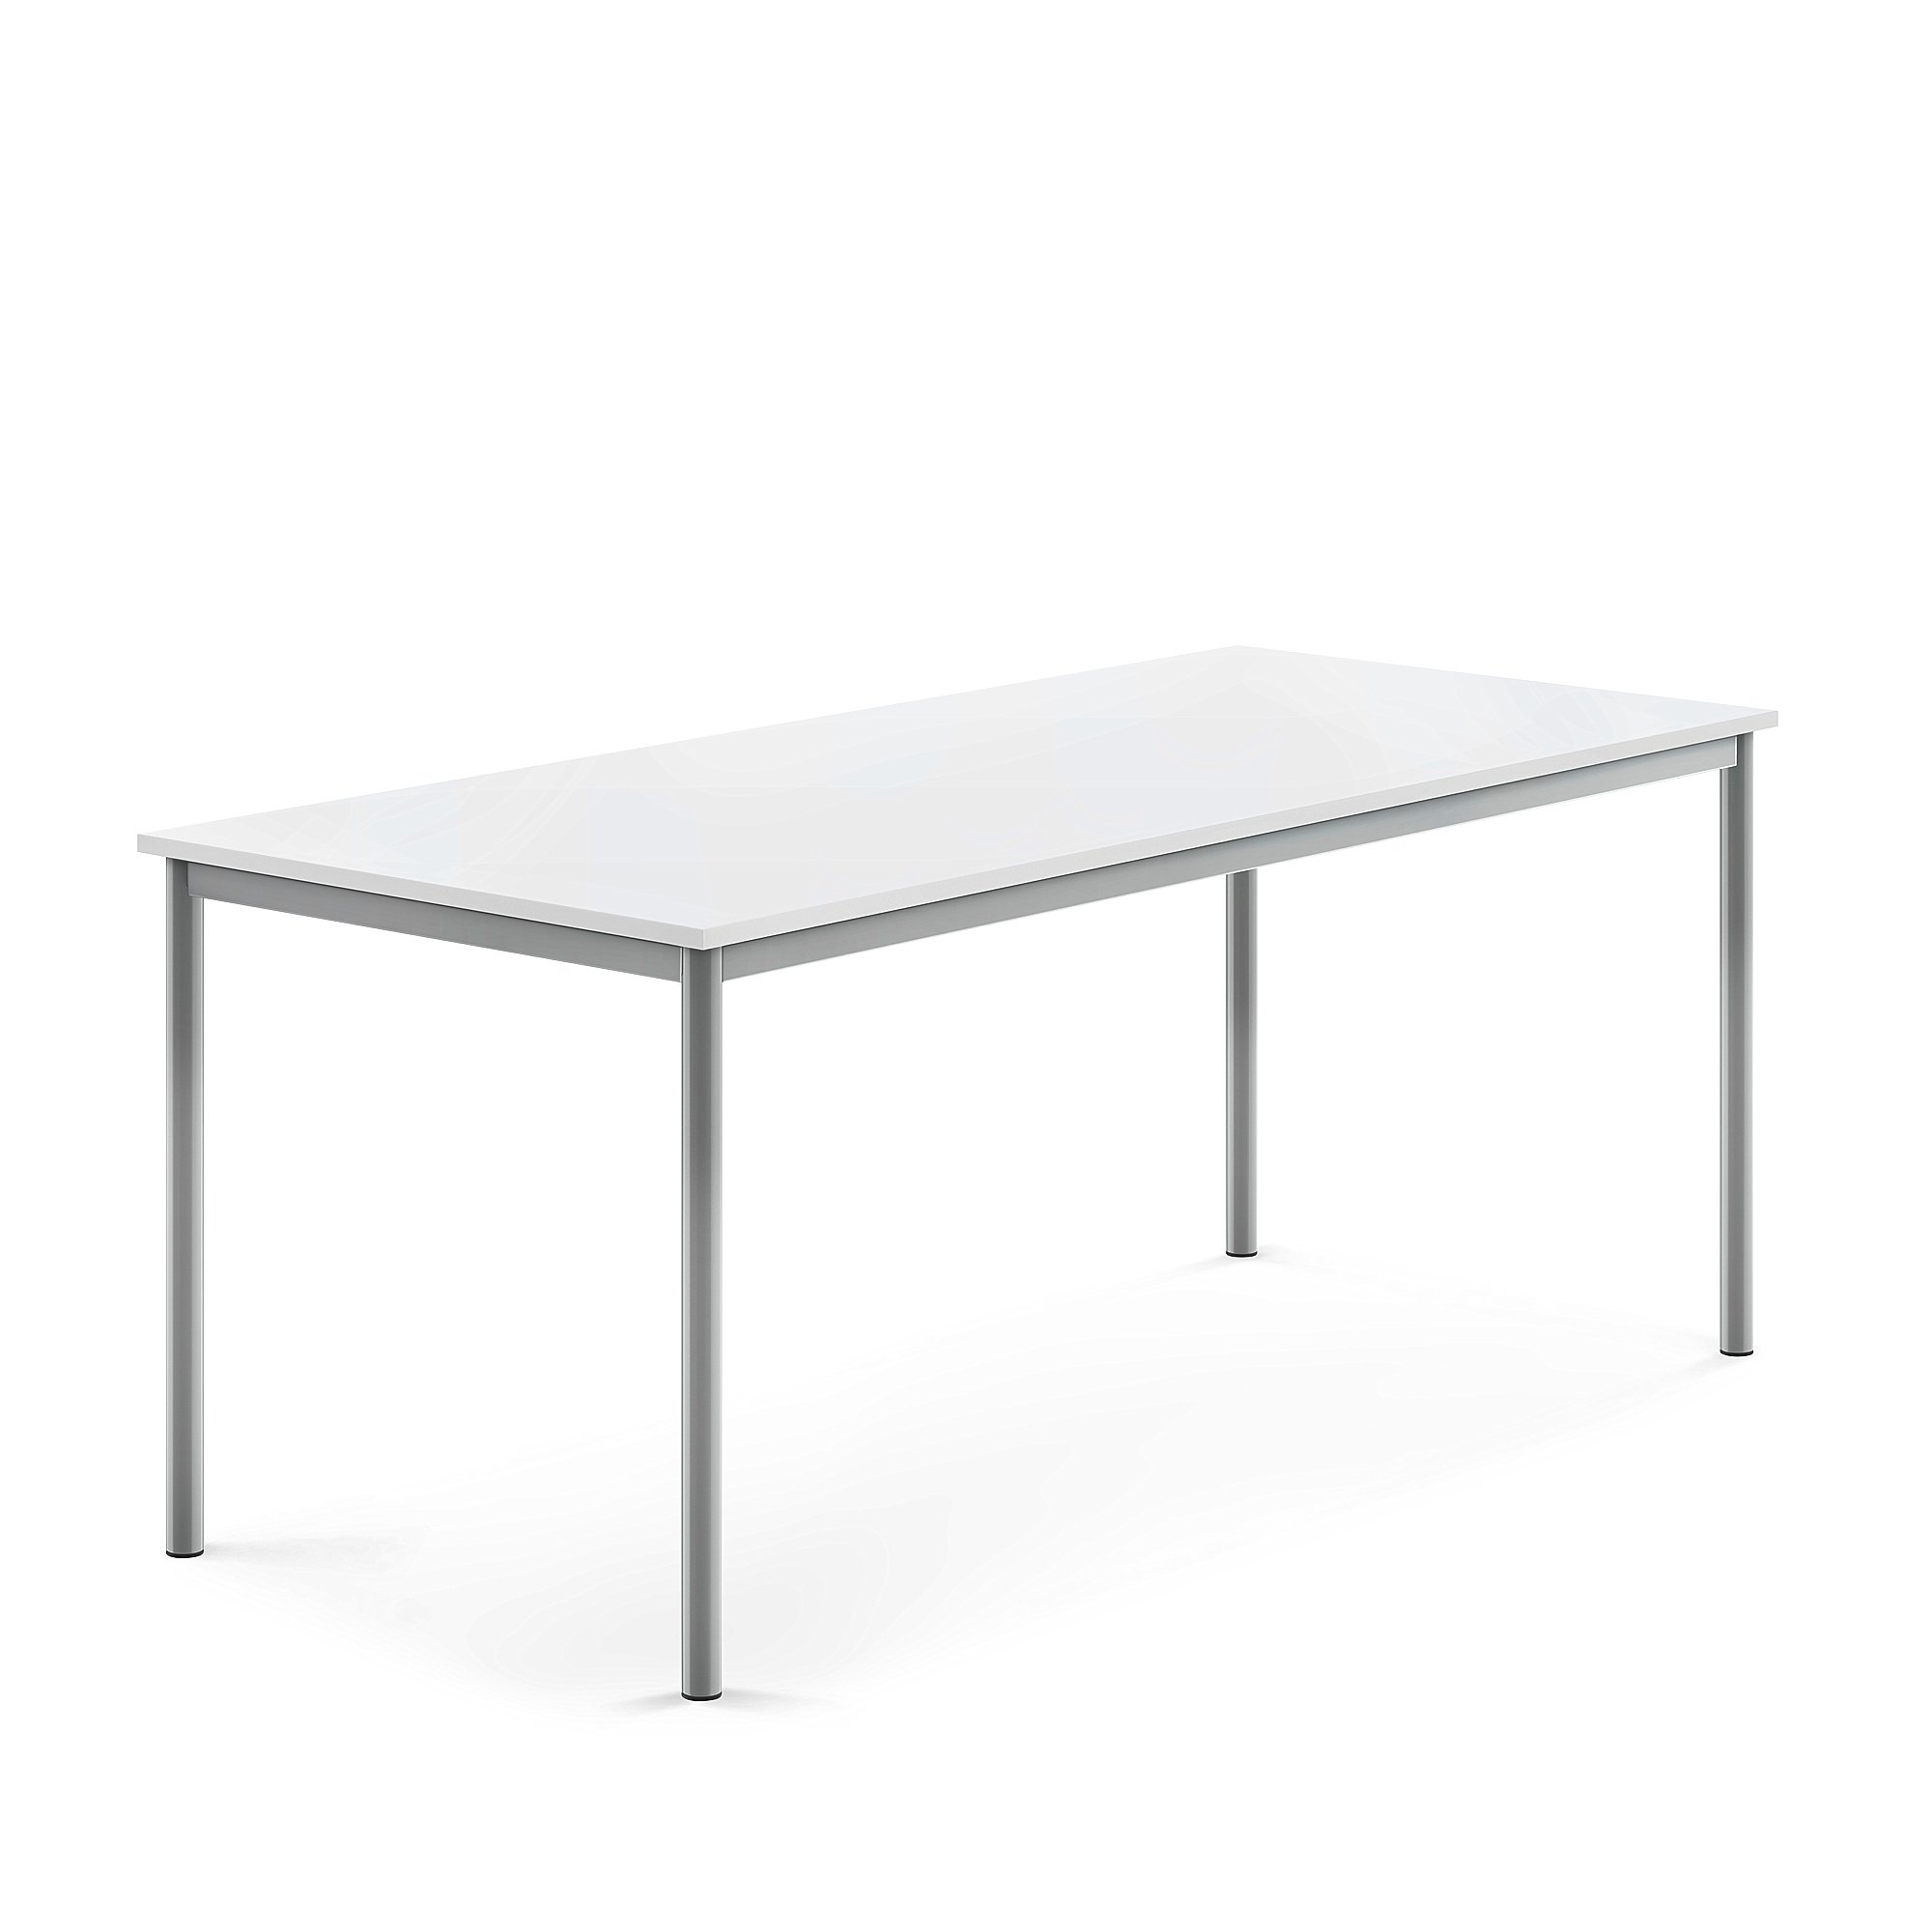 Stůl BORÅS, 1800x800x720 mm, stříbrné nohy, HPL deska, bílá